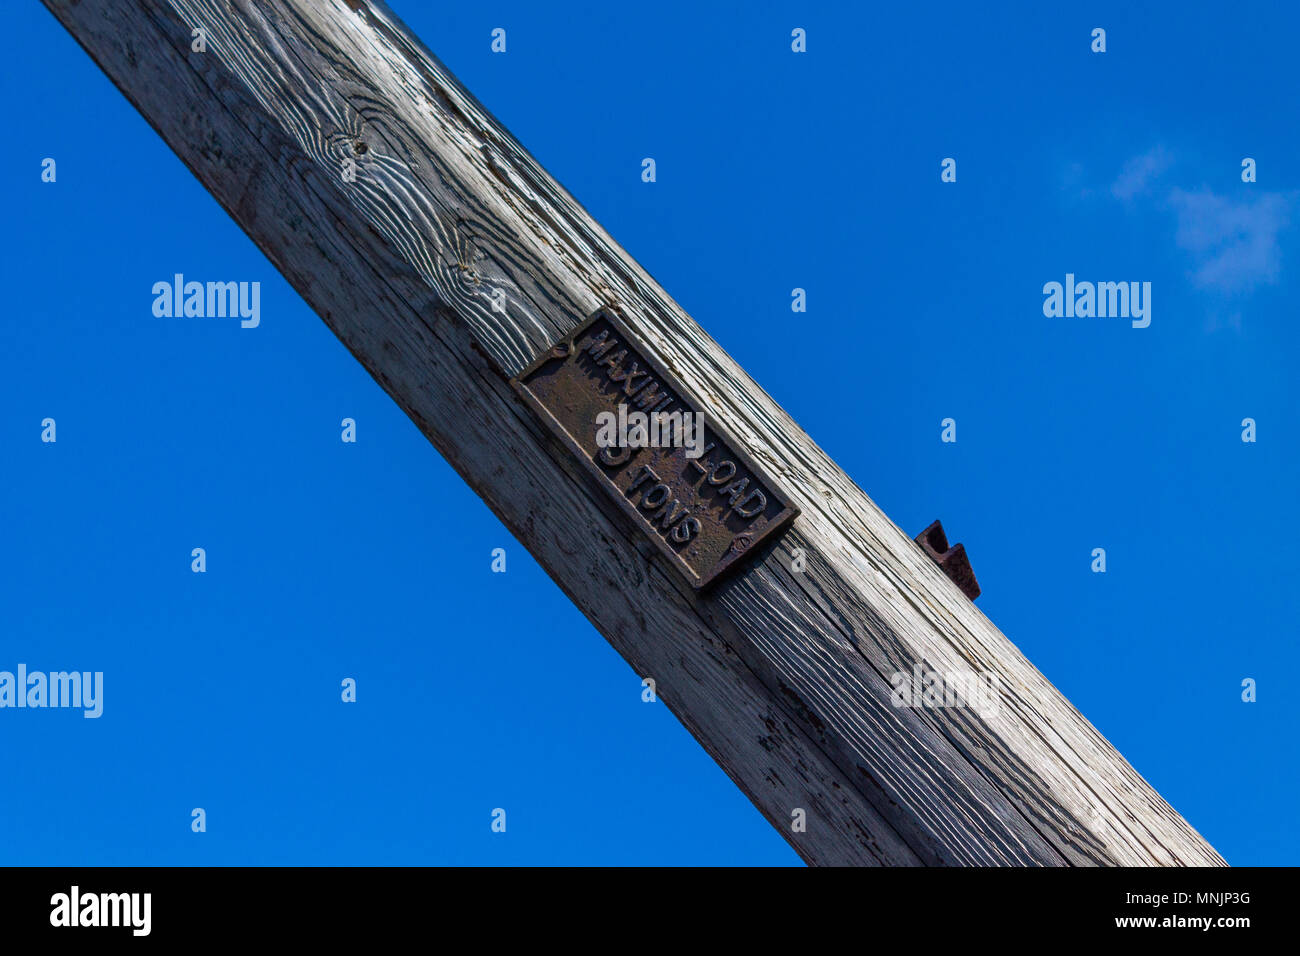 Gusseisen Zeichen auf einem alten hölzernen Kranausleger oder Ausleger mit einer Traglast zeigt drei Tonnen oder 3 Tonnen, gegen ein strahlend blauer Himmel. Stockfoto